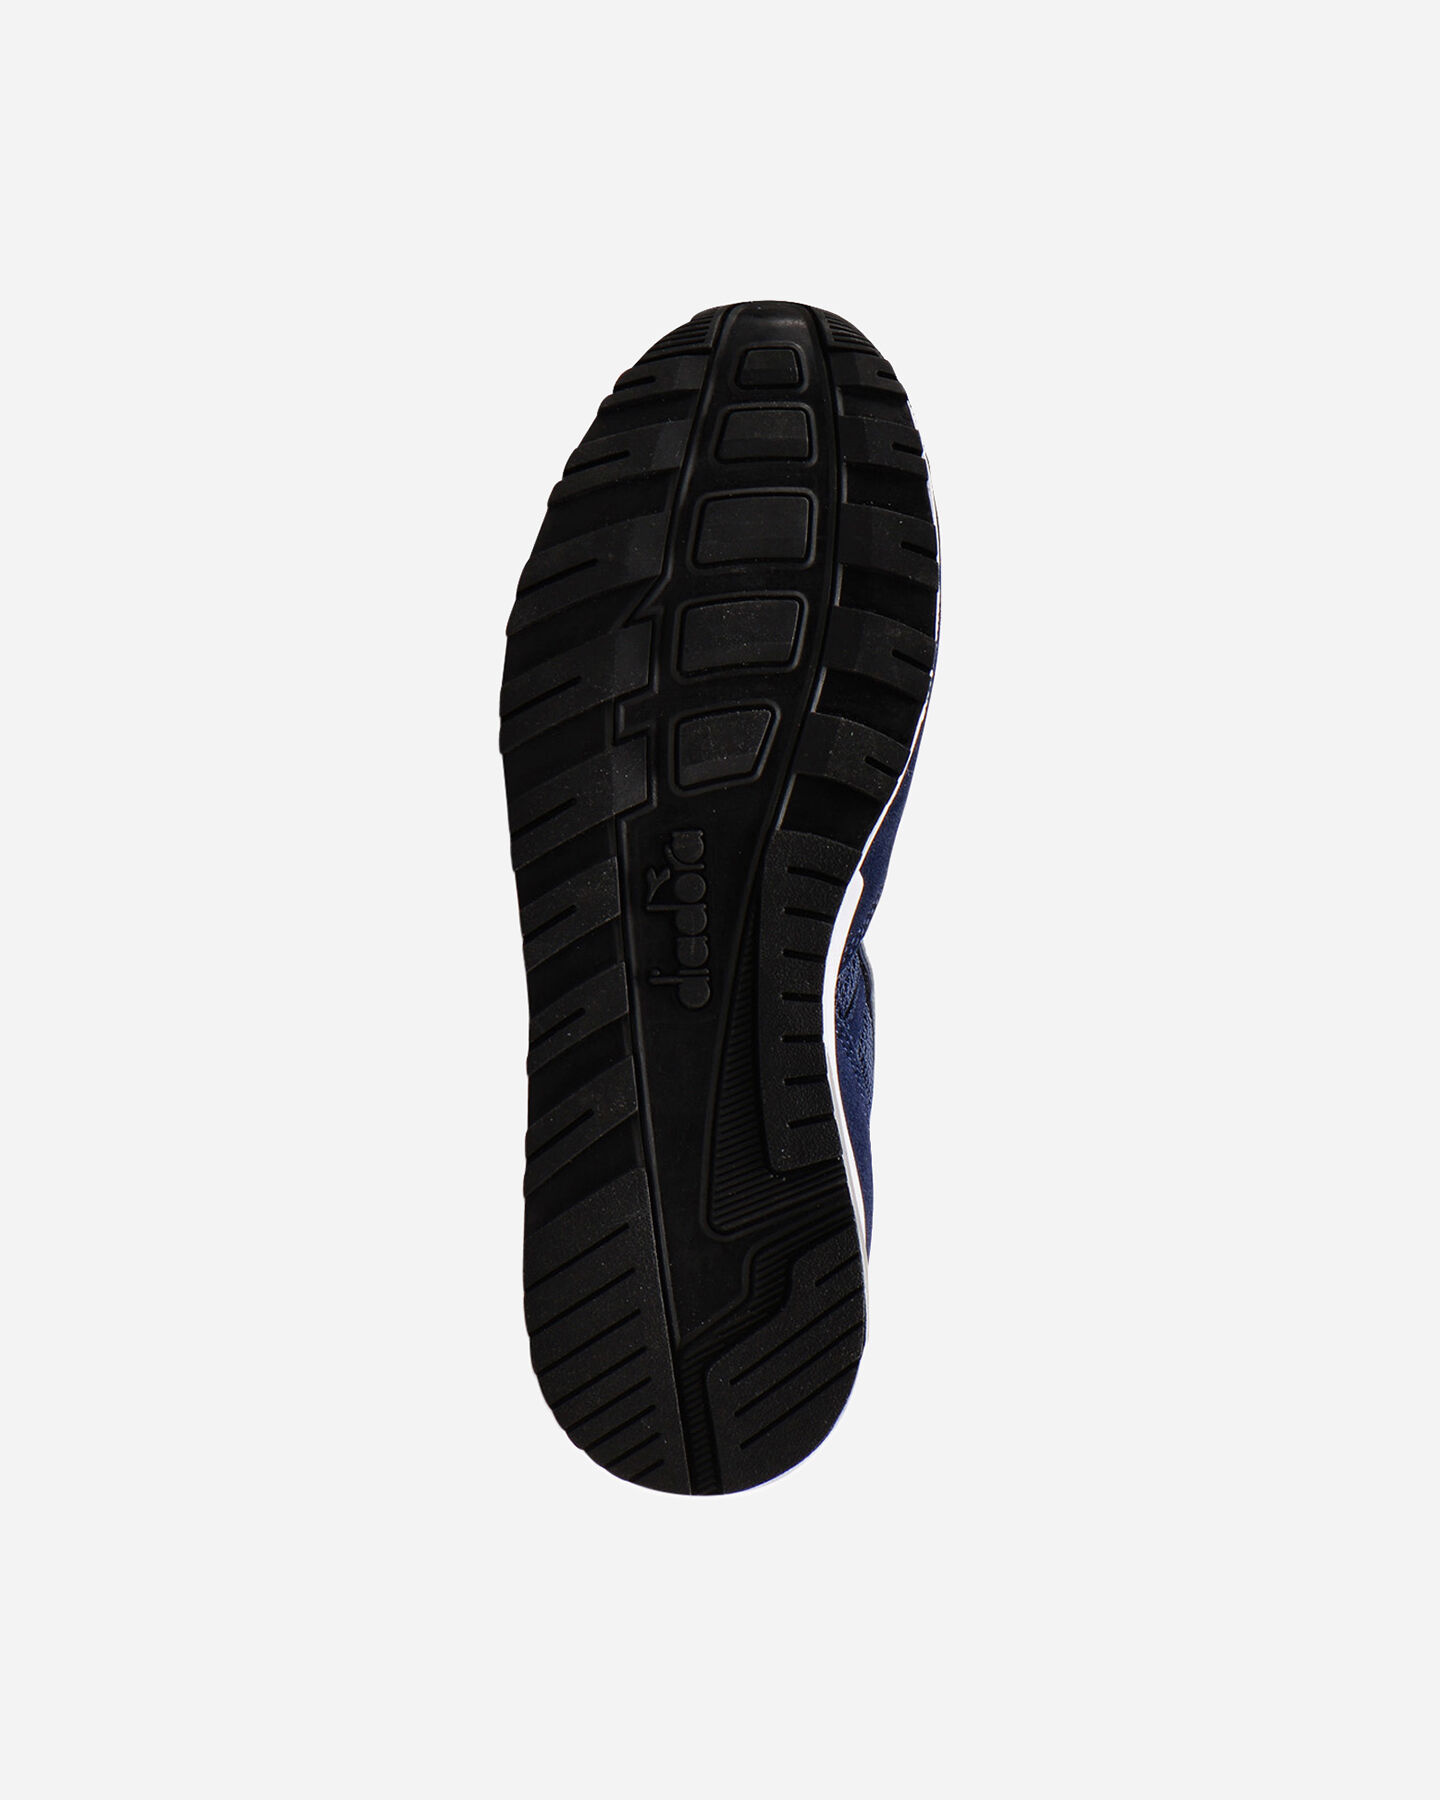  Scarpe sneakers DIADORA N902 S M S5226810|60031|3- scatto 2